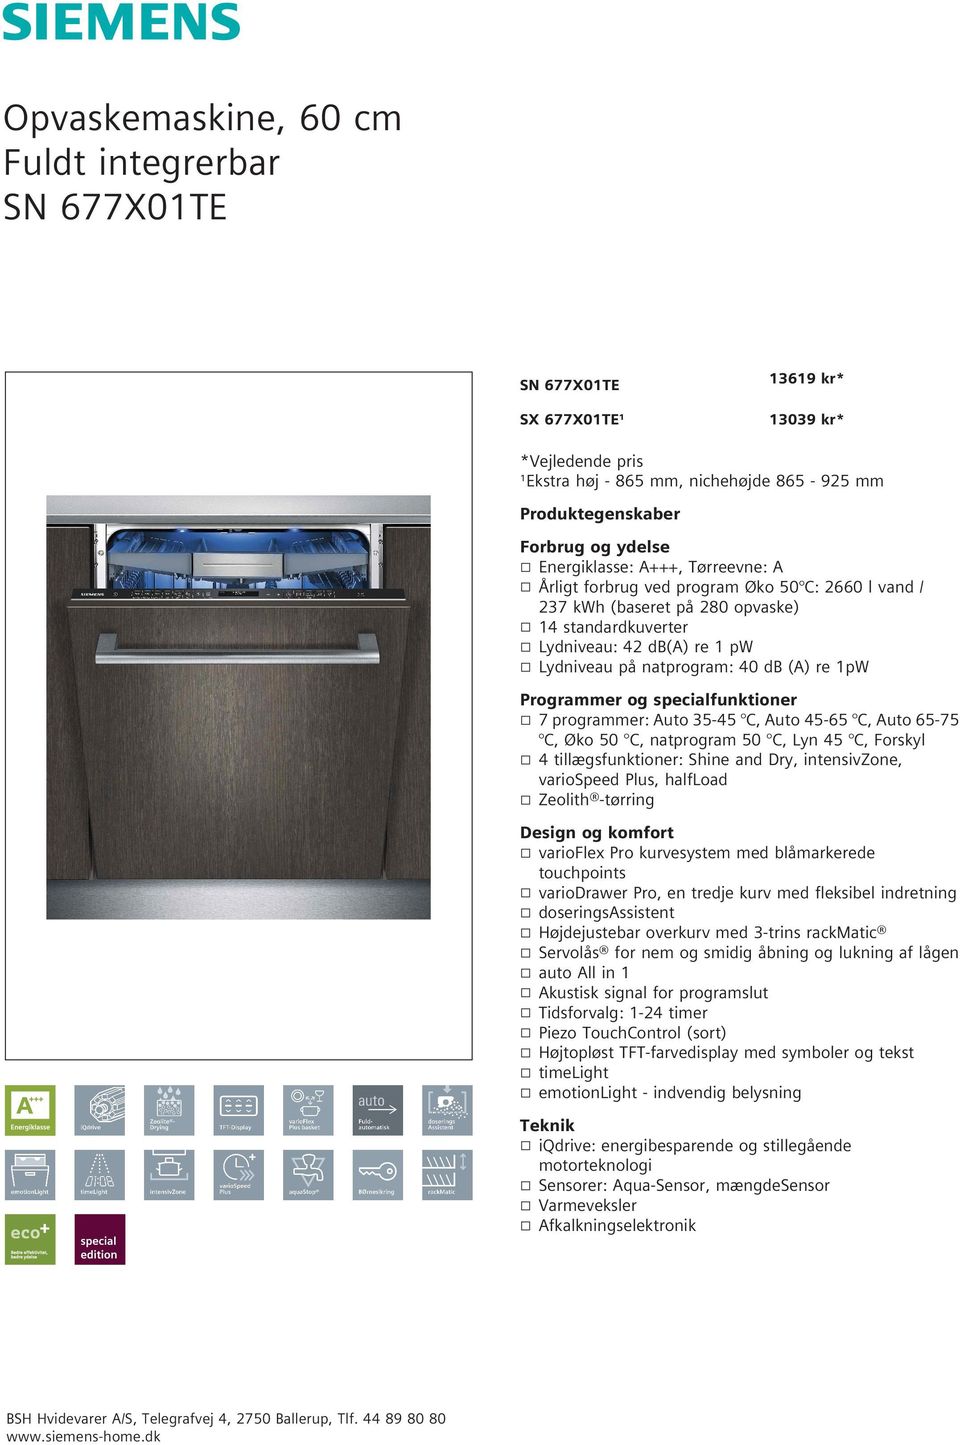 Opvaskemaskine, 60 cm Fuldt integrerbar SN 677X01TE - PDF Free Download